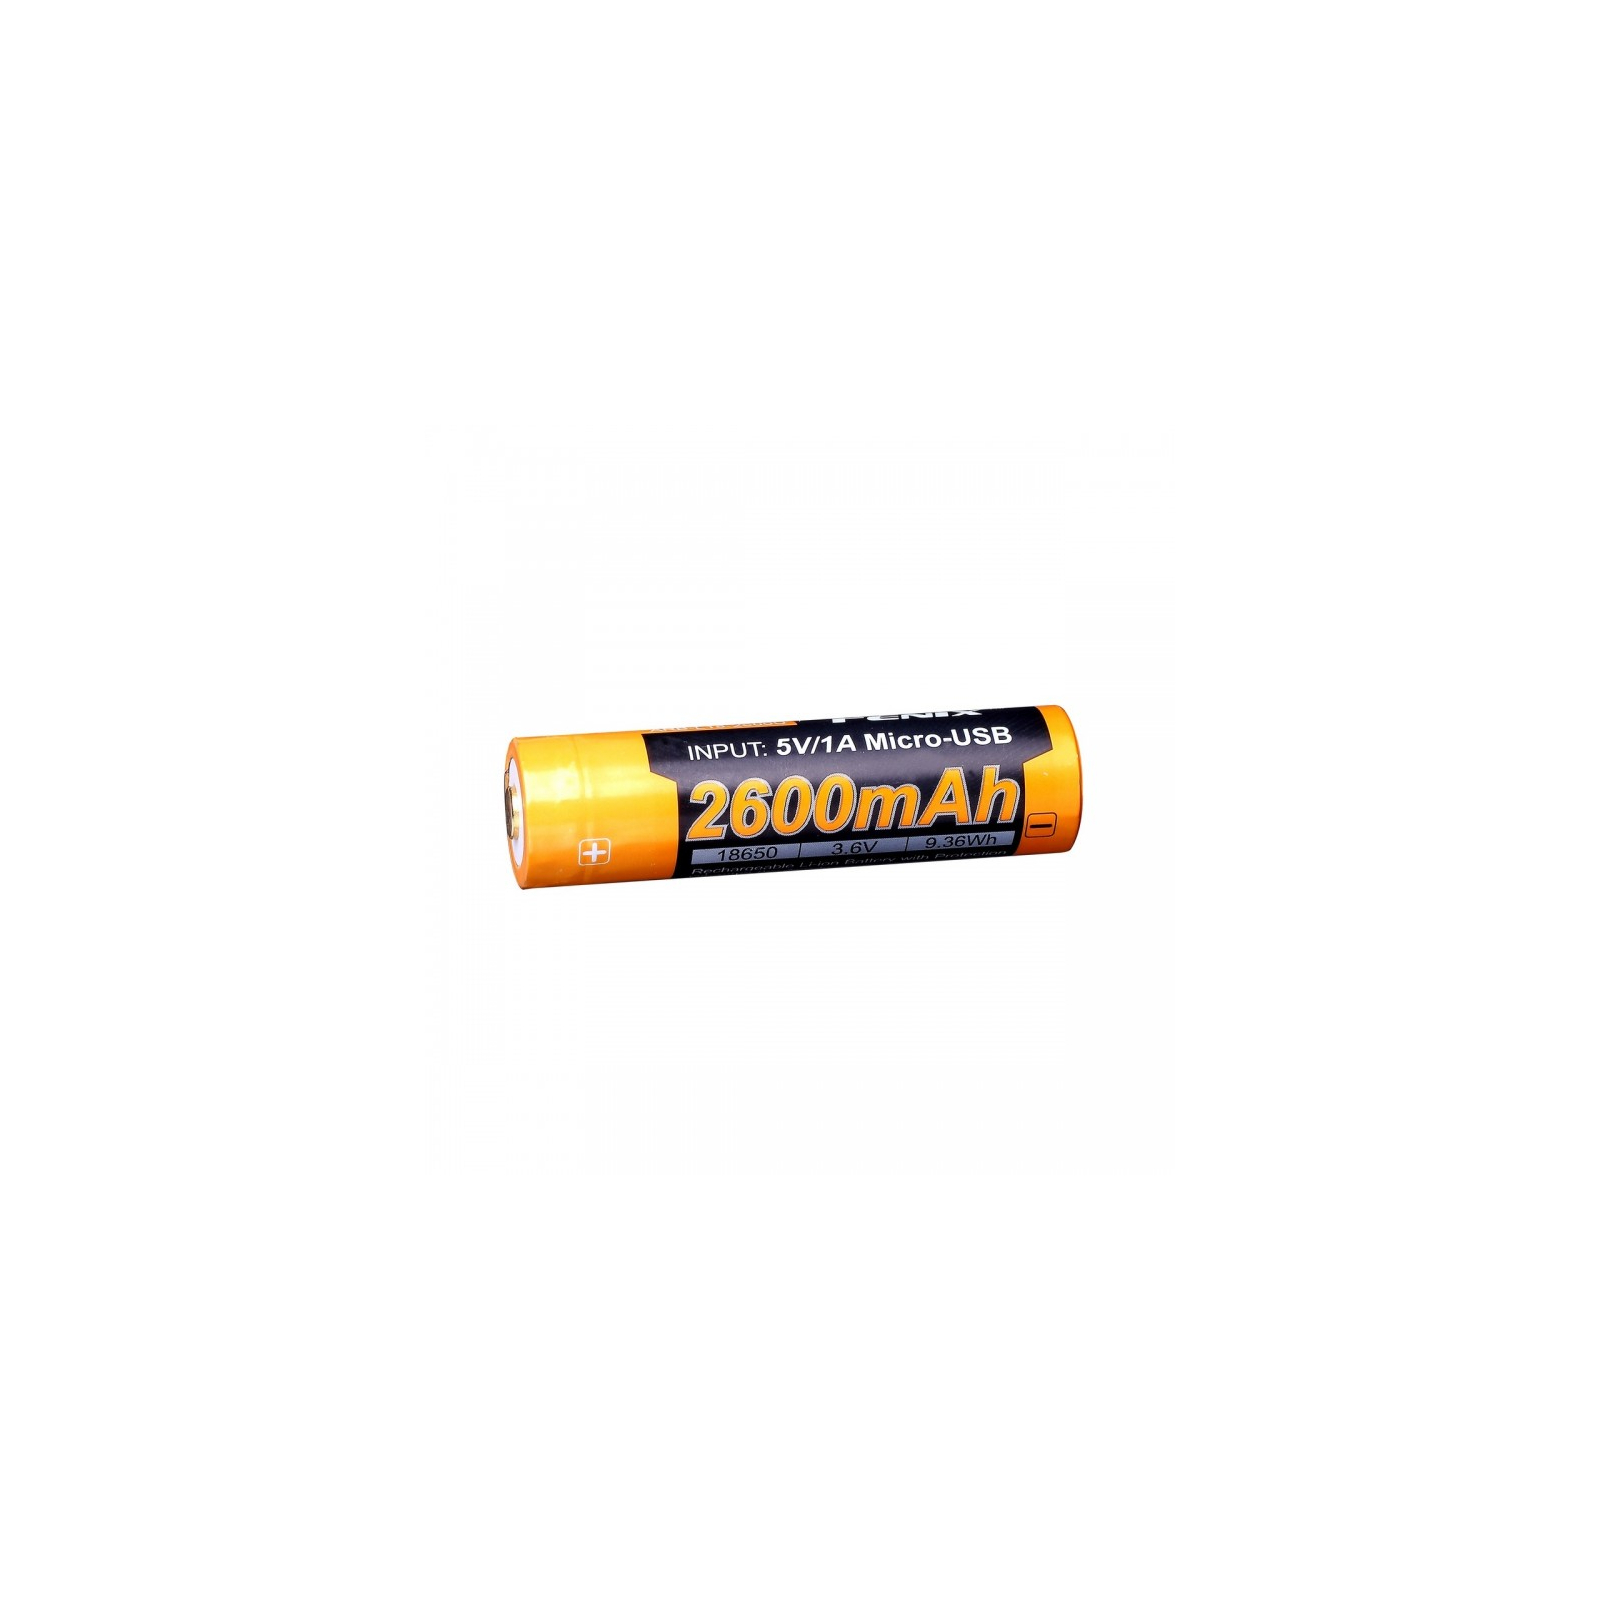 Аккумулятор Fenix 18650  2600 mAh micro usb зарядка (ARB-L18-2600U) изображение 2